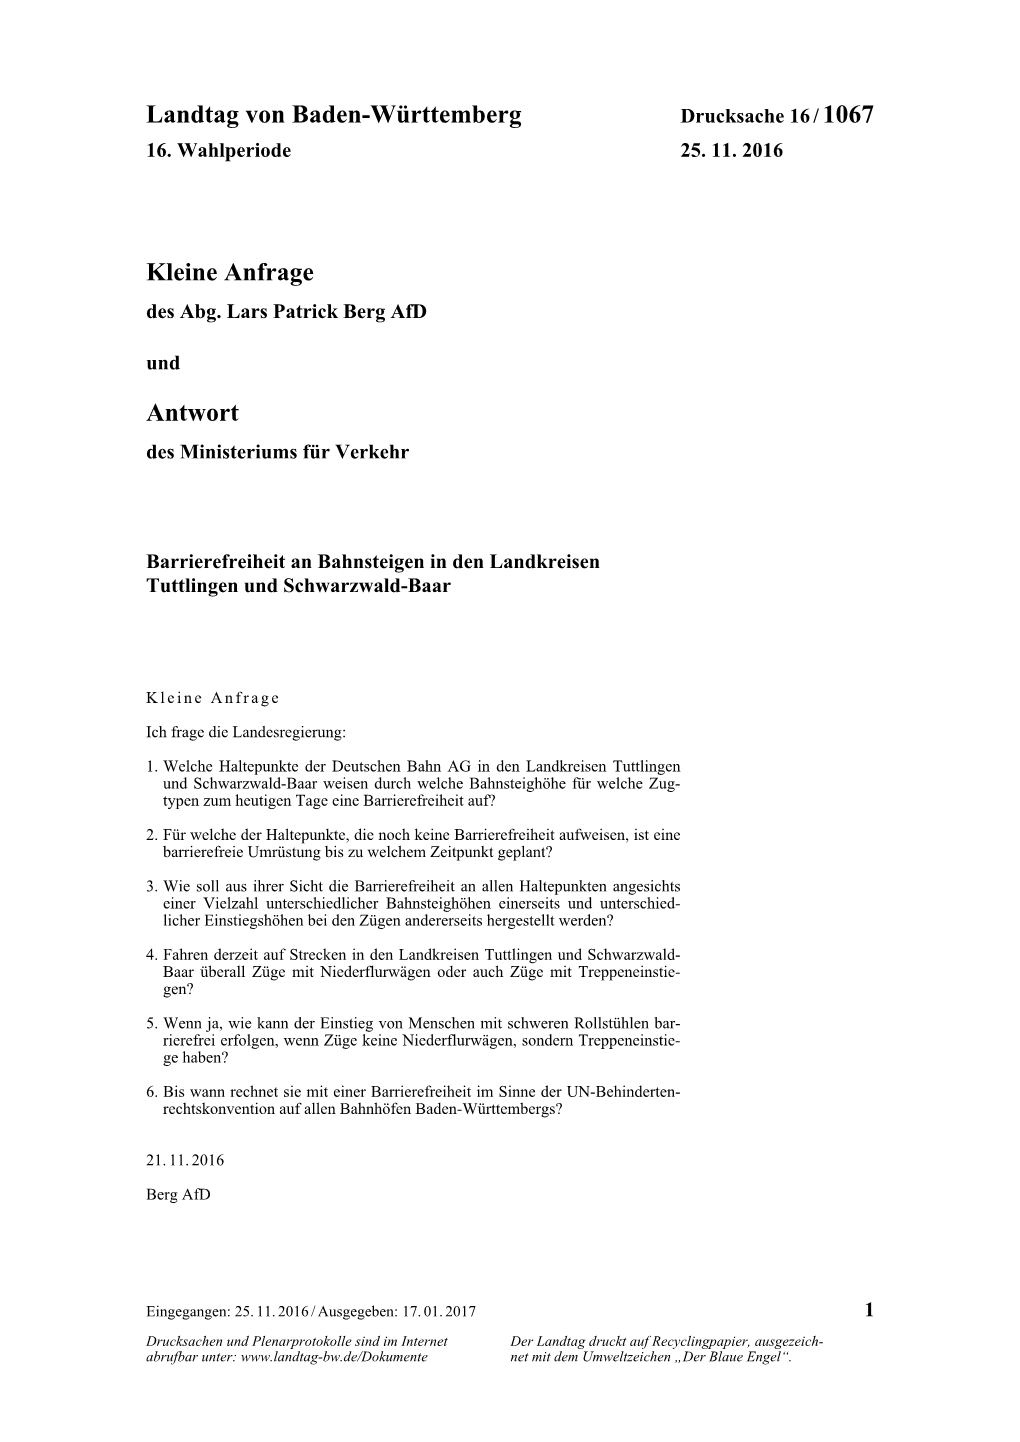 Landtag Von Baden-Württemberg Kleine Anfrage